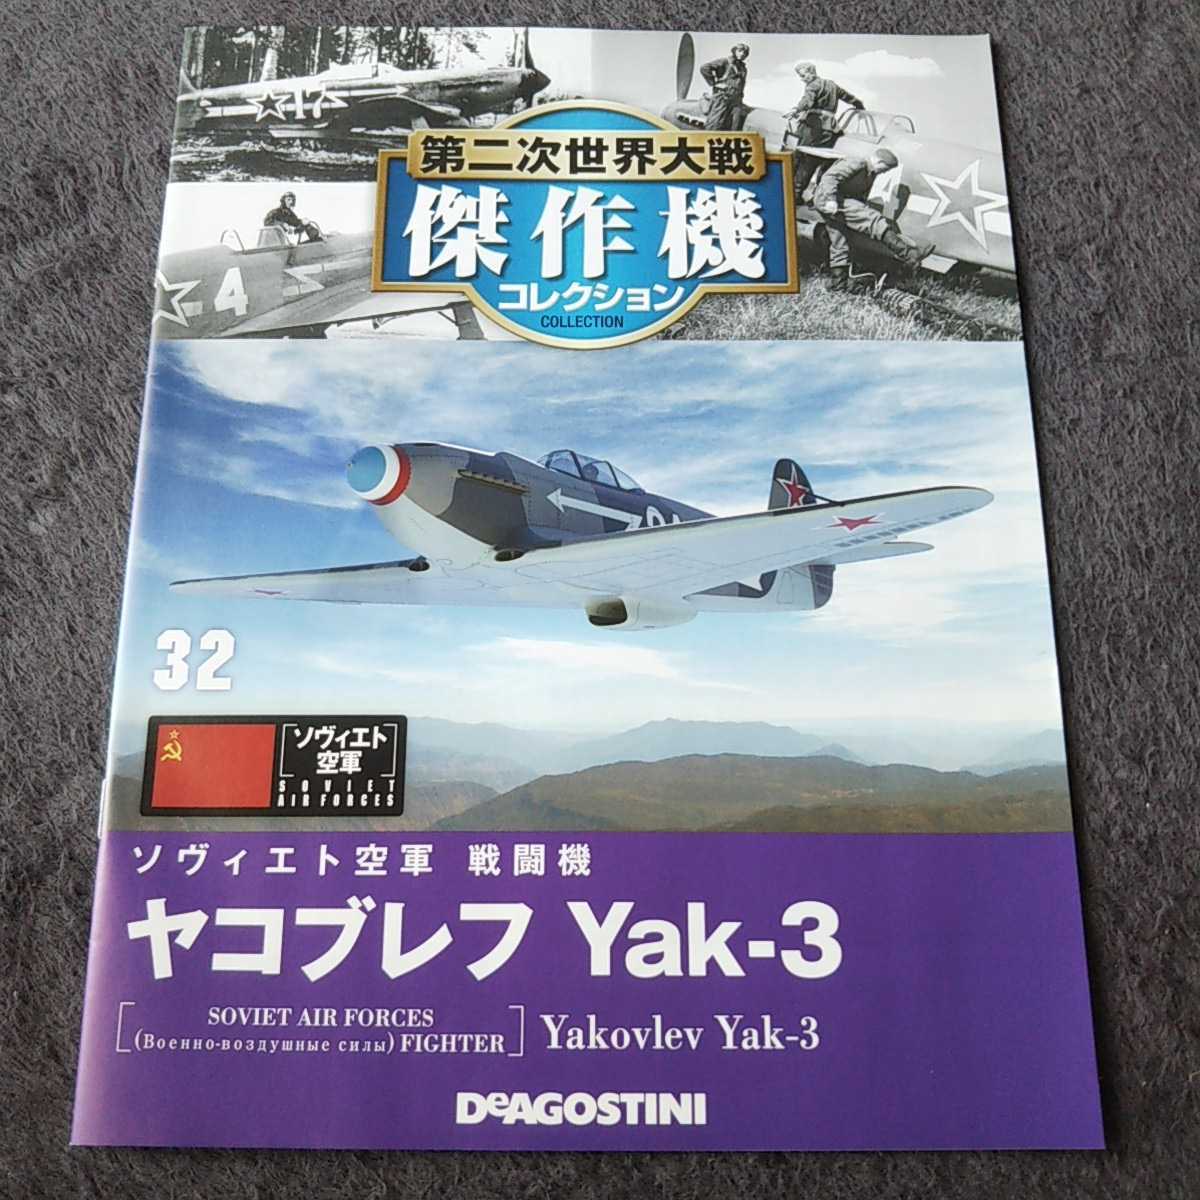 デアゴスティーニ戦闘機第二次世界大戦傑作機コレクション